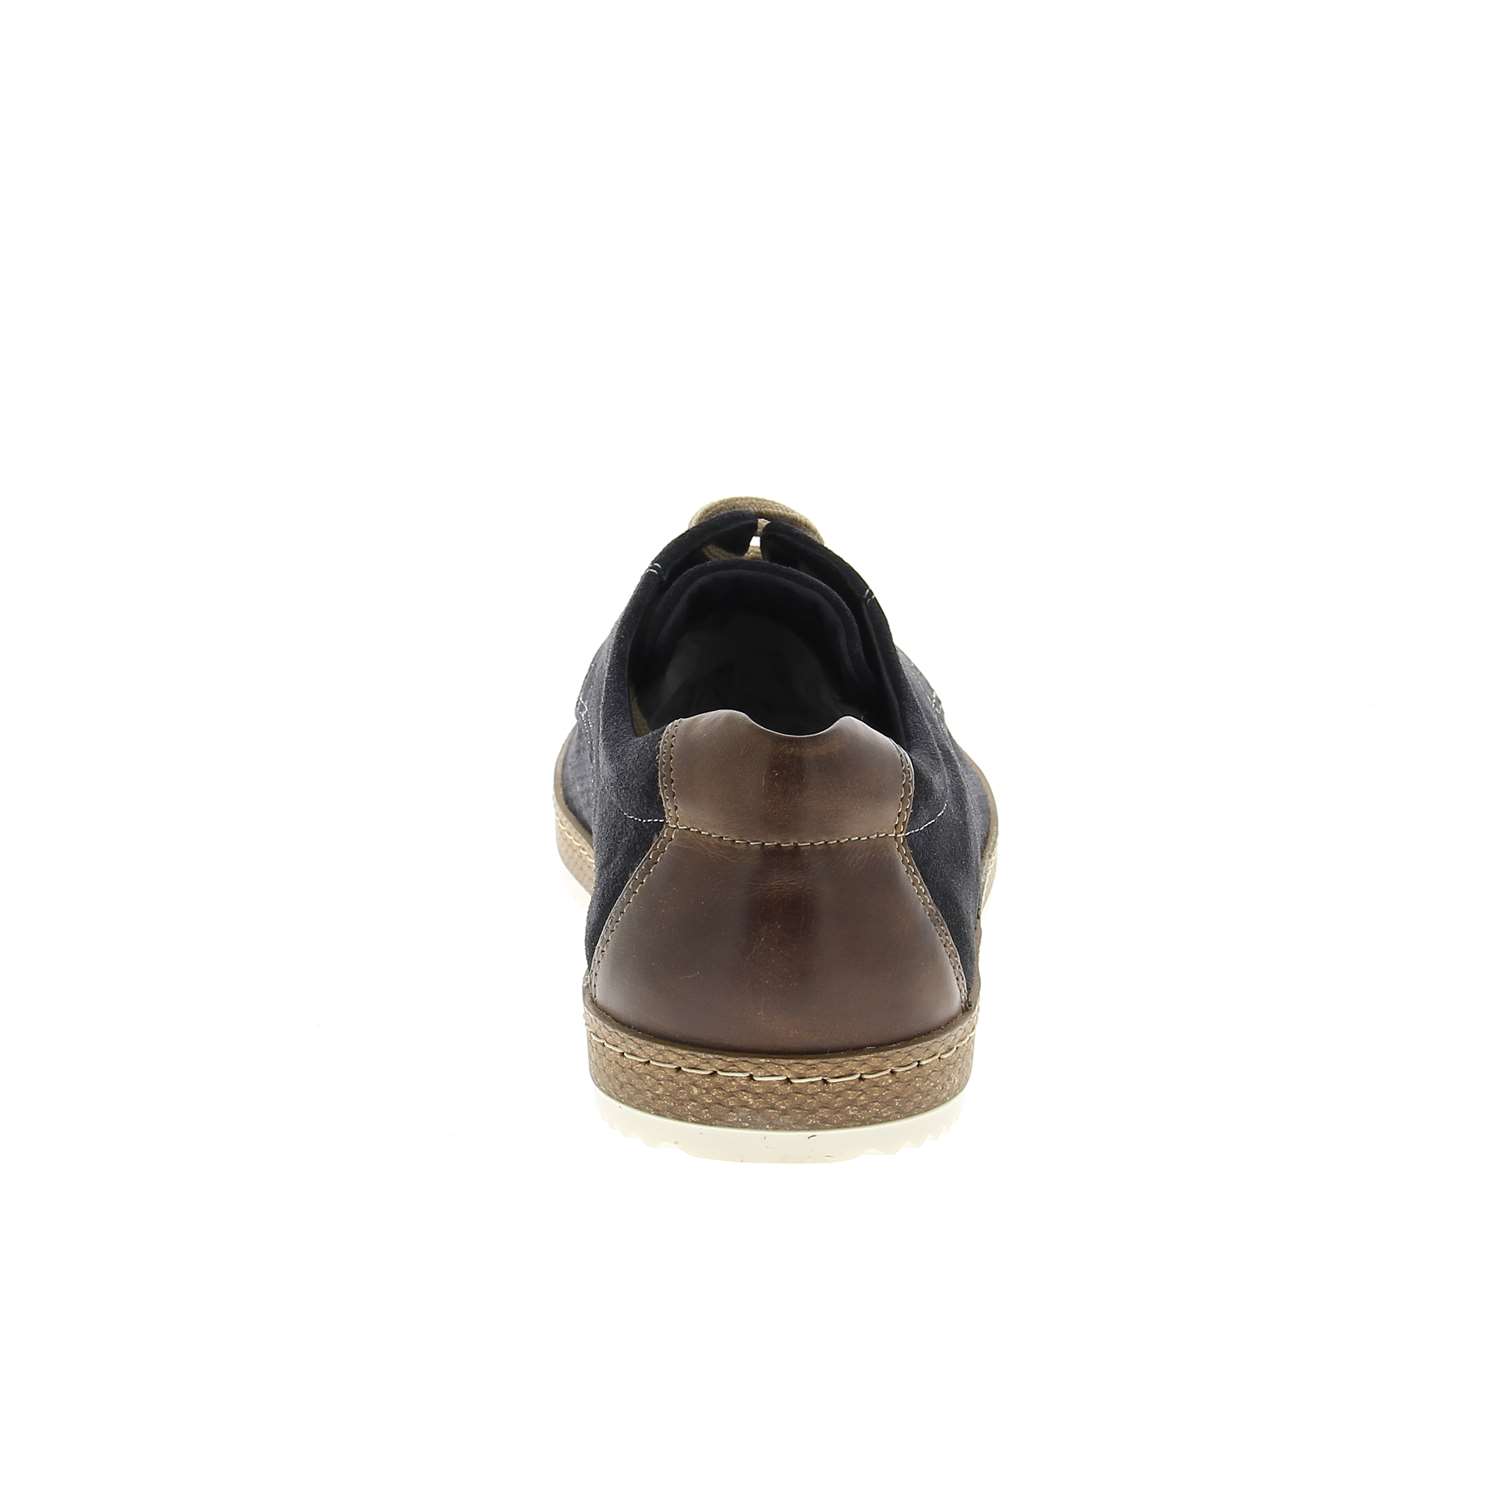 04 - ALLIA - XAPI - Chaussures à lacets - Croûte de cuir